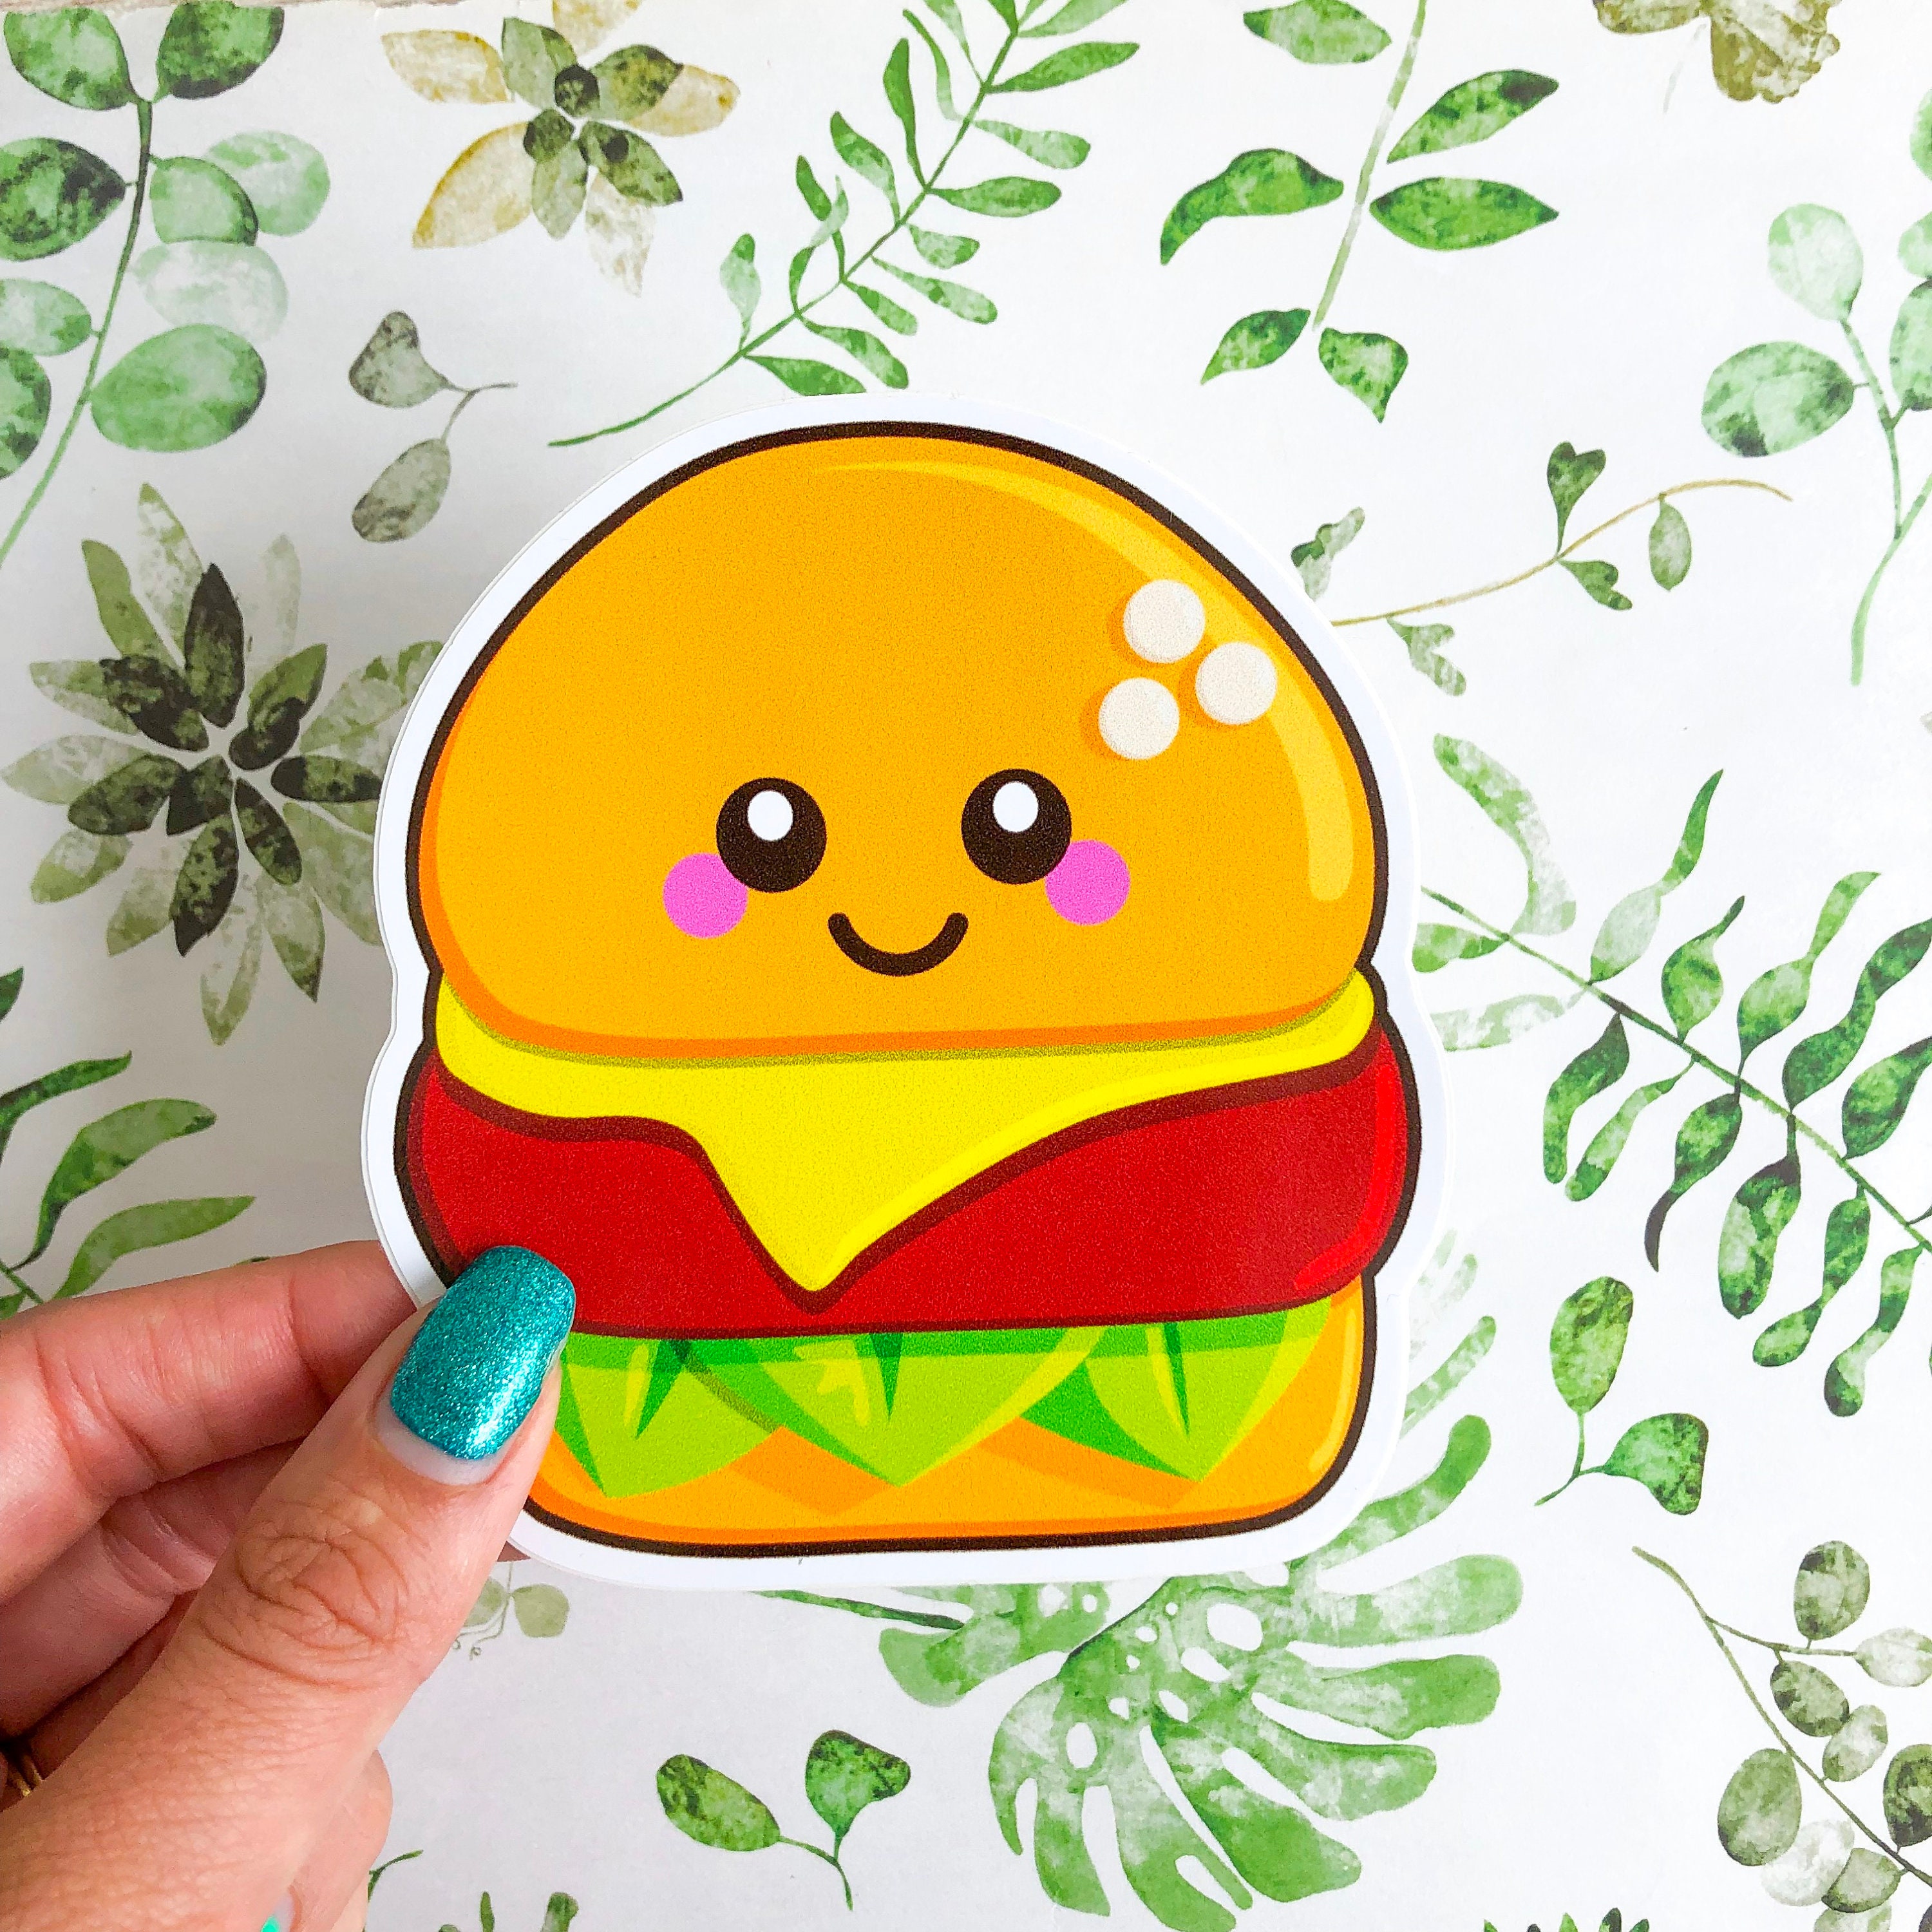 Cute and funny smiling hamburger - Smiling Hamburger - Sticker